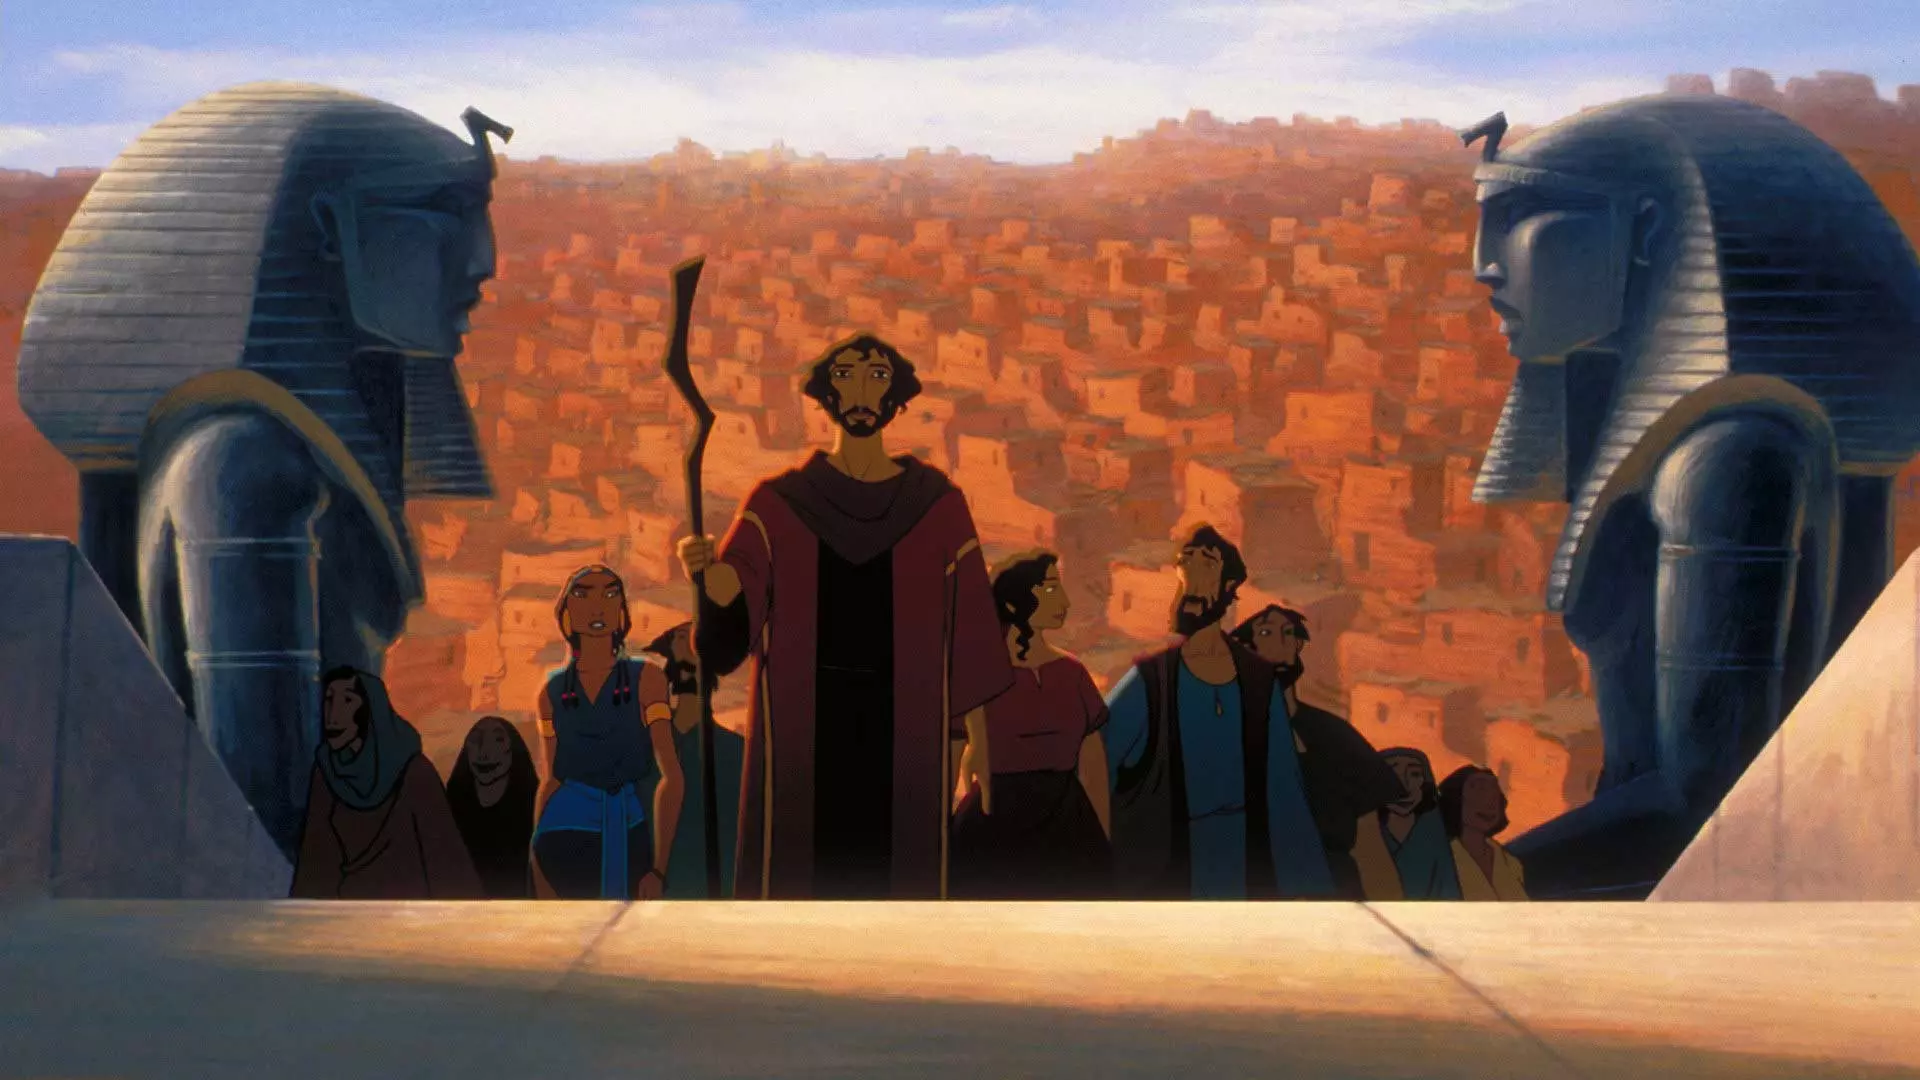 یوسف پیامبر در انیمیشن شاهزاده مصری